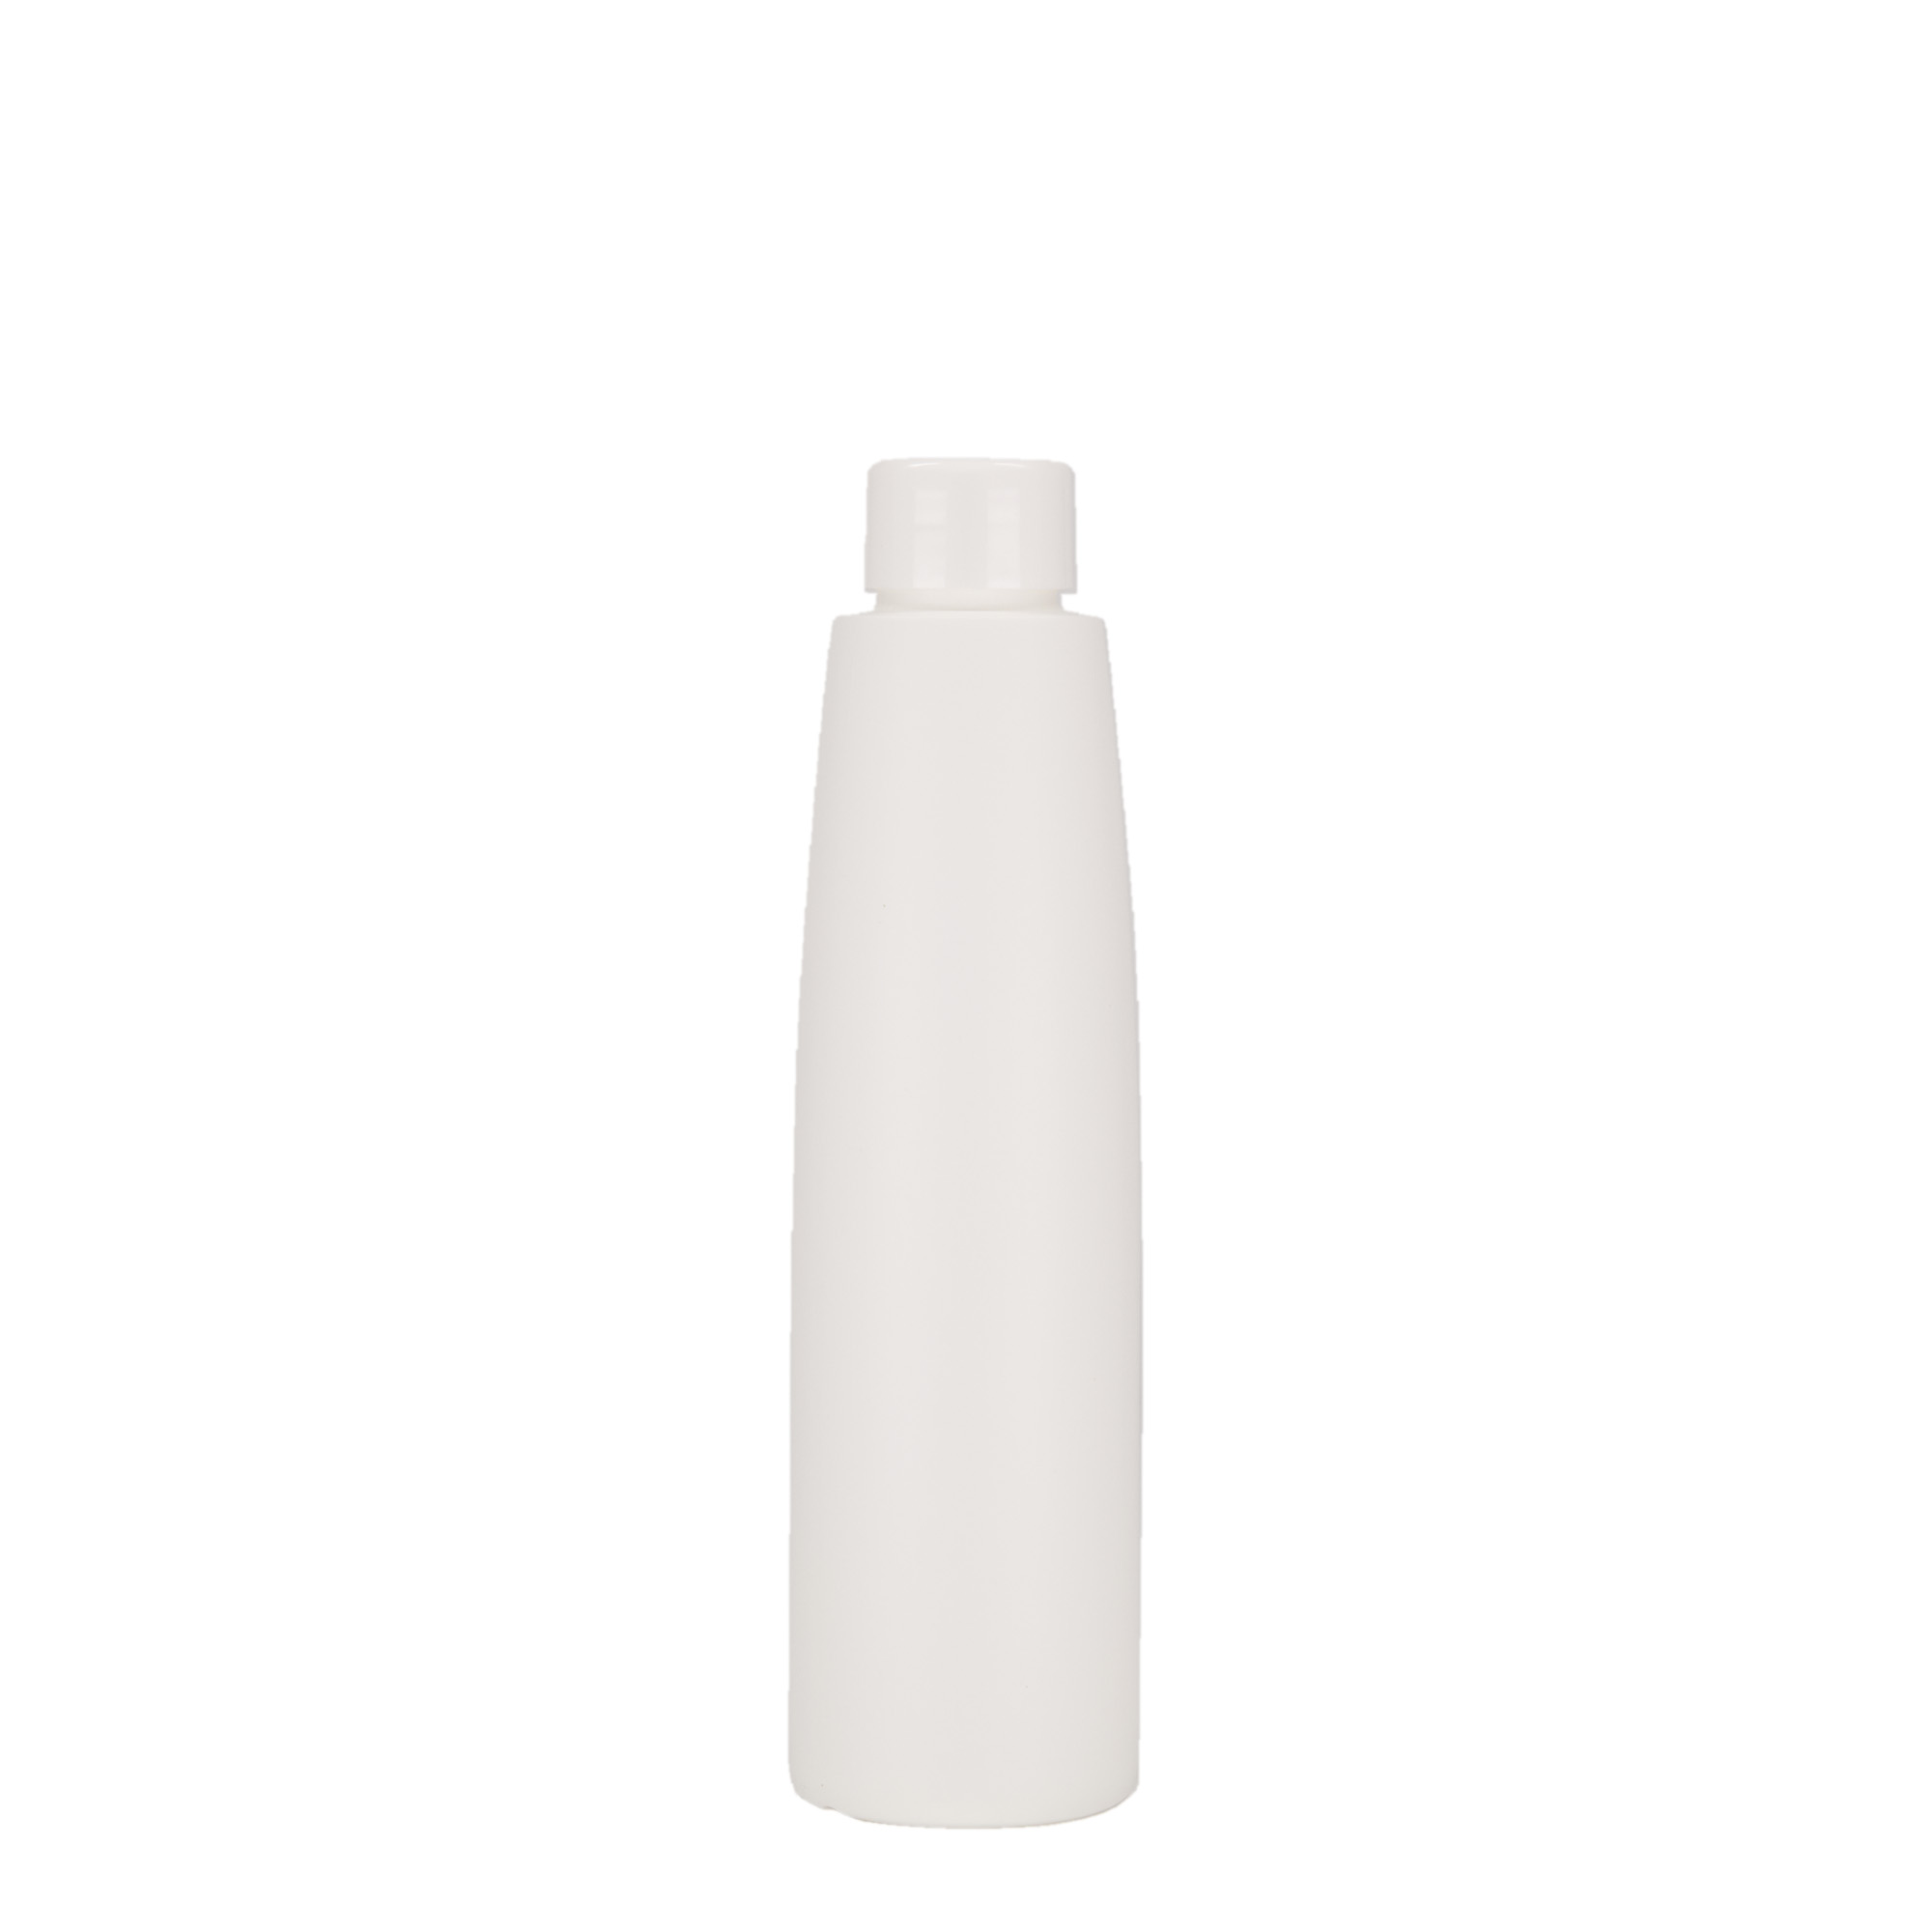 200 ml plastic bottle 'Donald', HDPE, white, closure: GPI 24/410